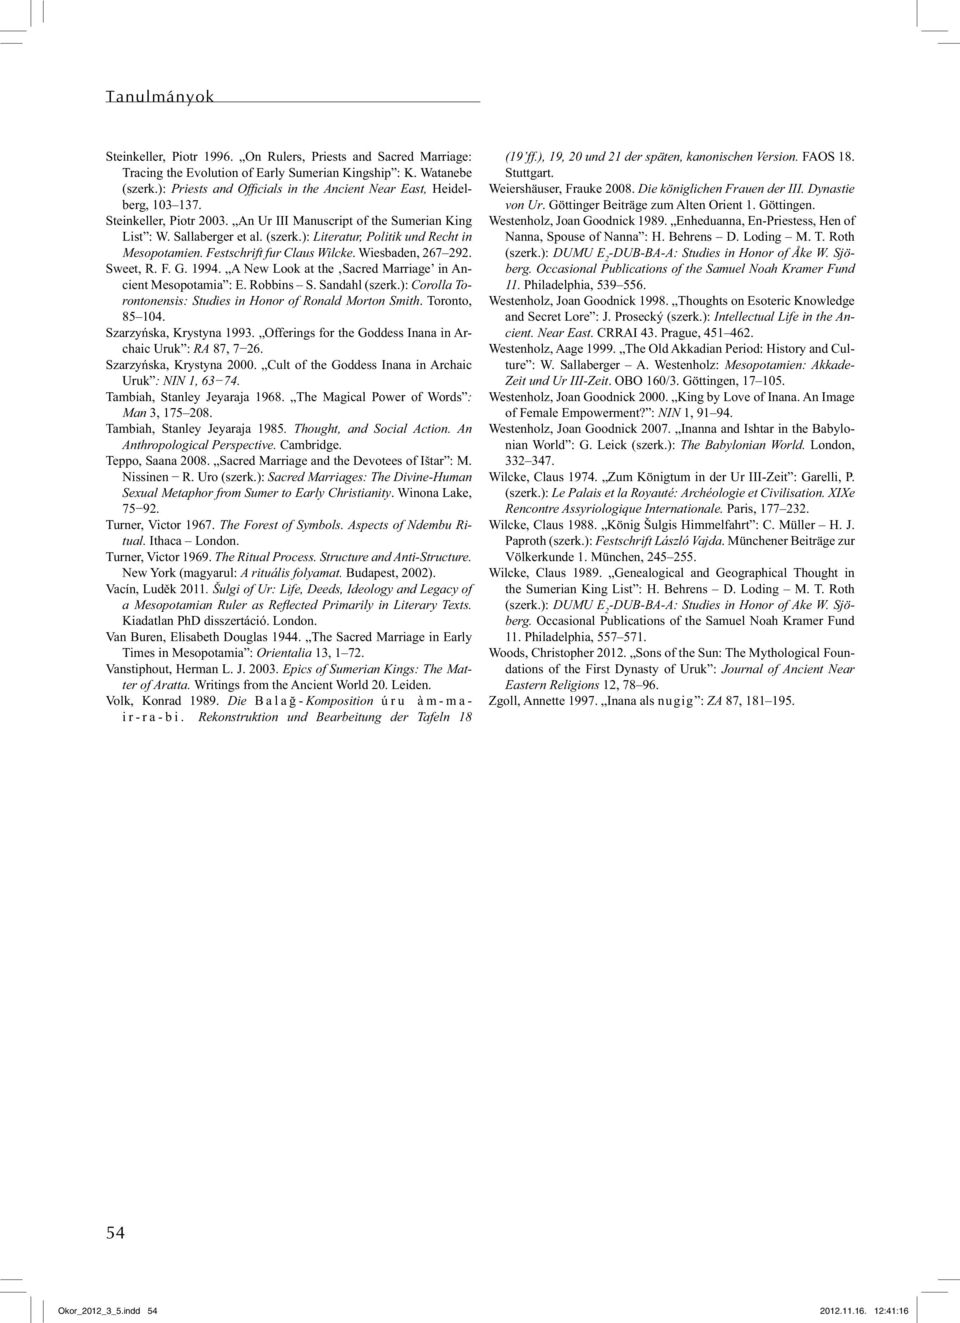 ): Literatur, Politik und Recht in Mesopotamien. Festschrift fur Claus Wilcke. Wiesbaden, 267 292. Sweet, R. F. G. 1994. A New Look at the Sacred Marriage in Ancient Mesopotamia : E. Robbins S.